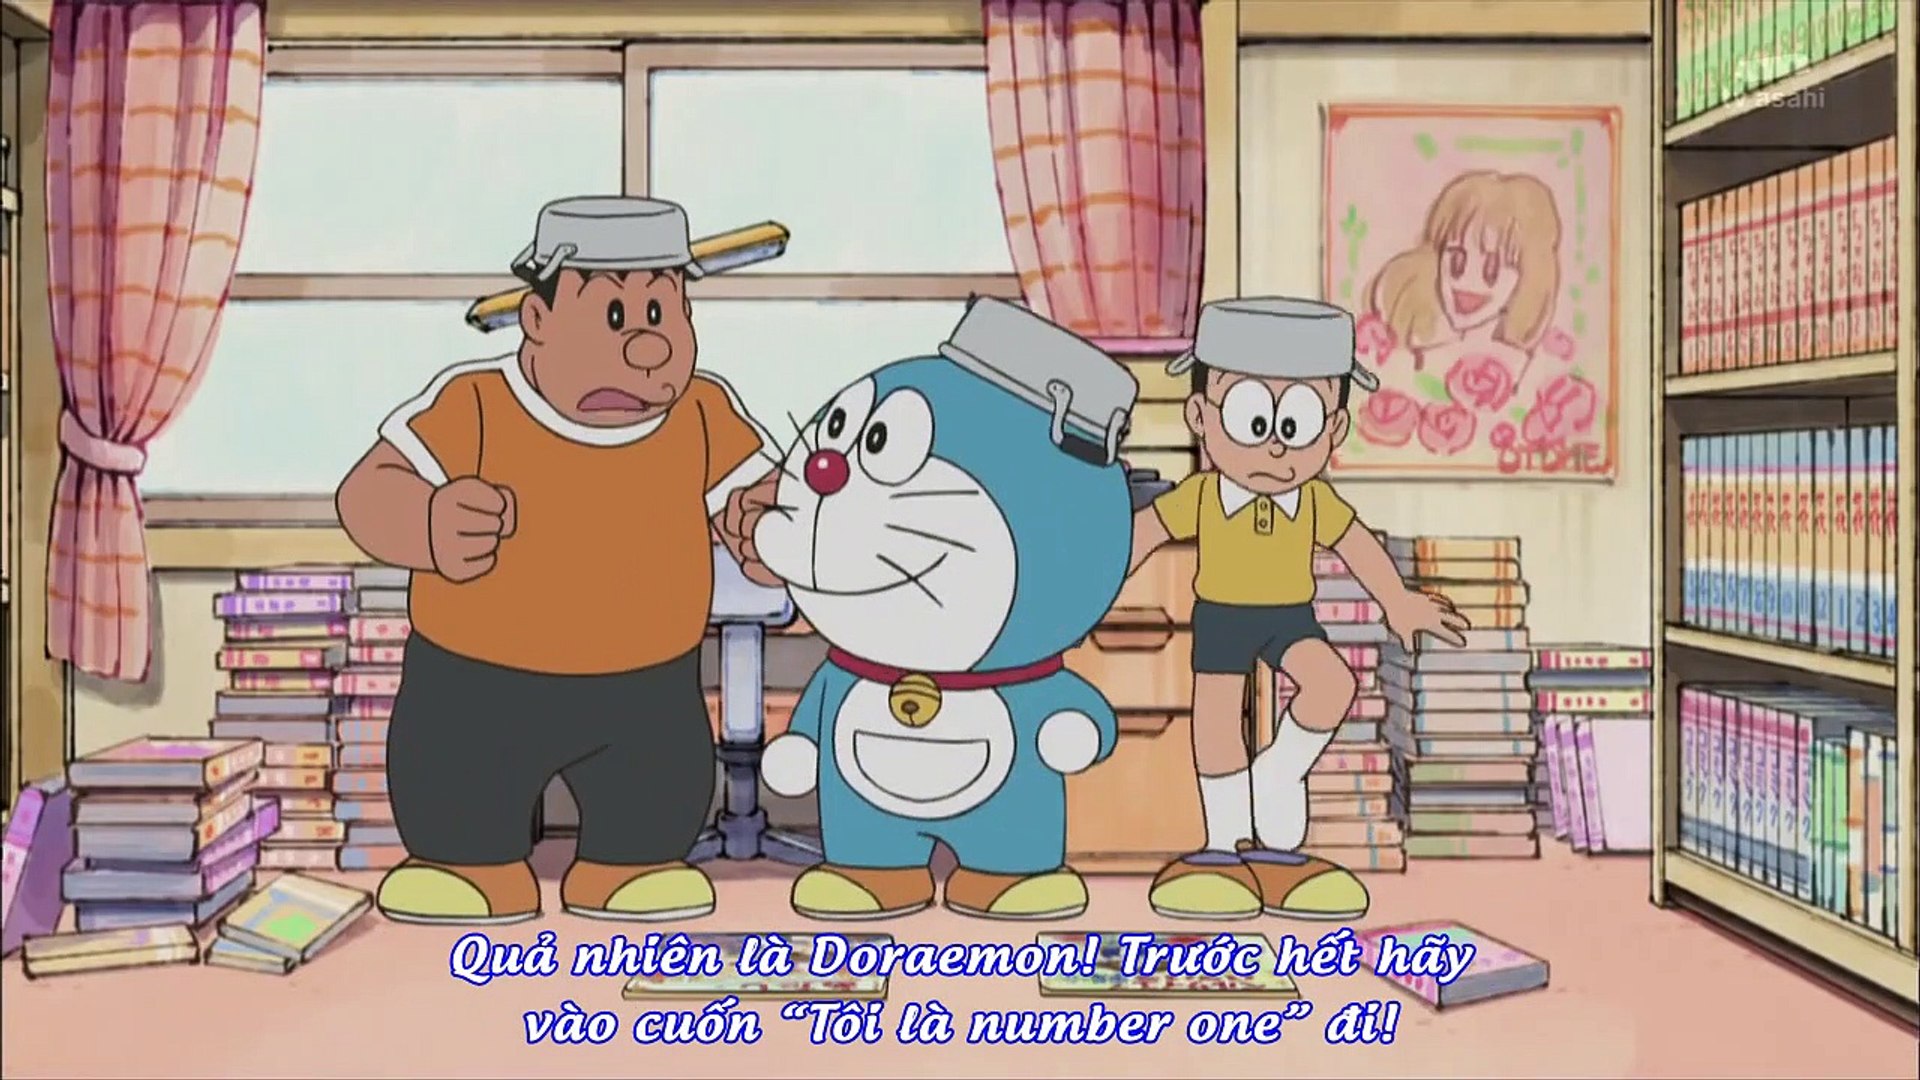 ドラえもん Doraemon Ep 296 ジャイ子の漫画にお邪魔しま お天気ボックス Video Dailymotion